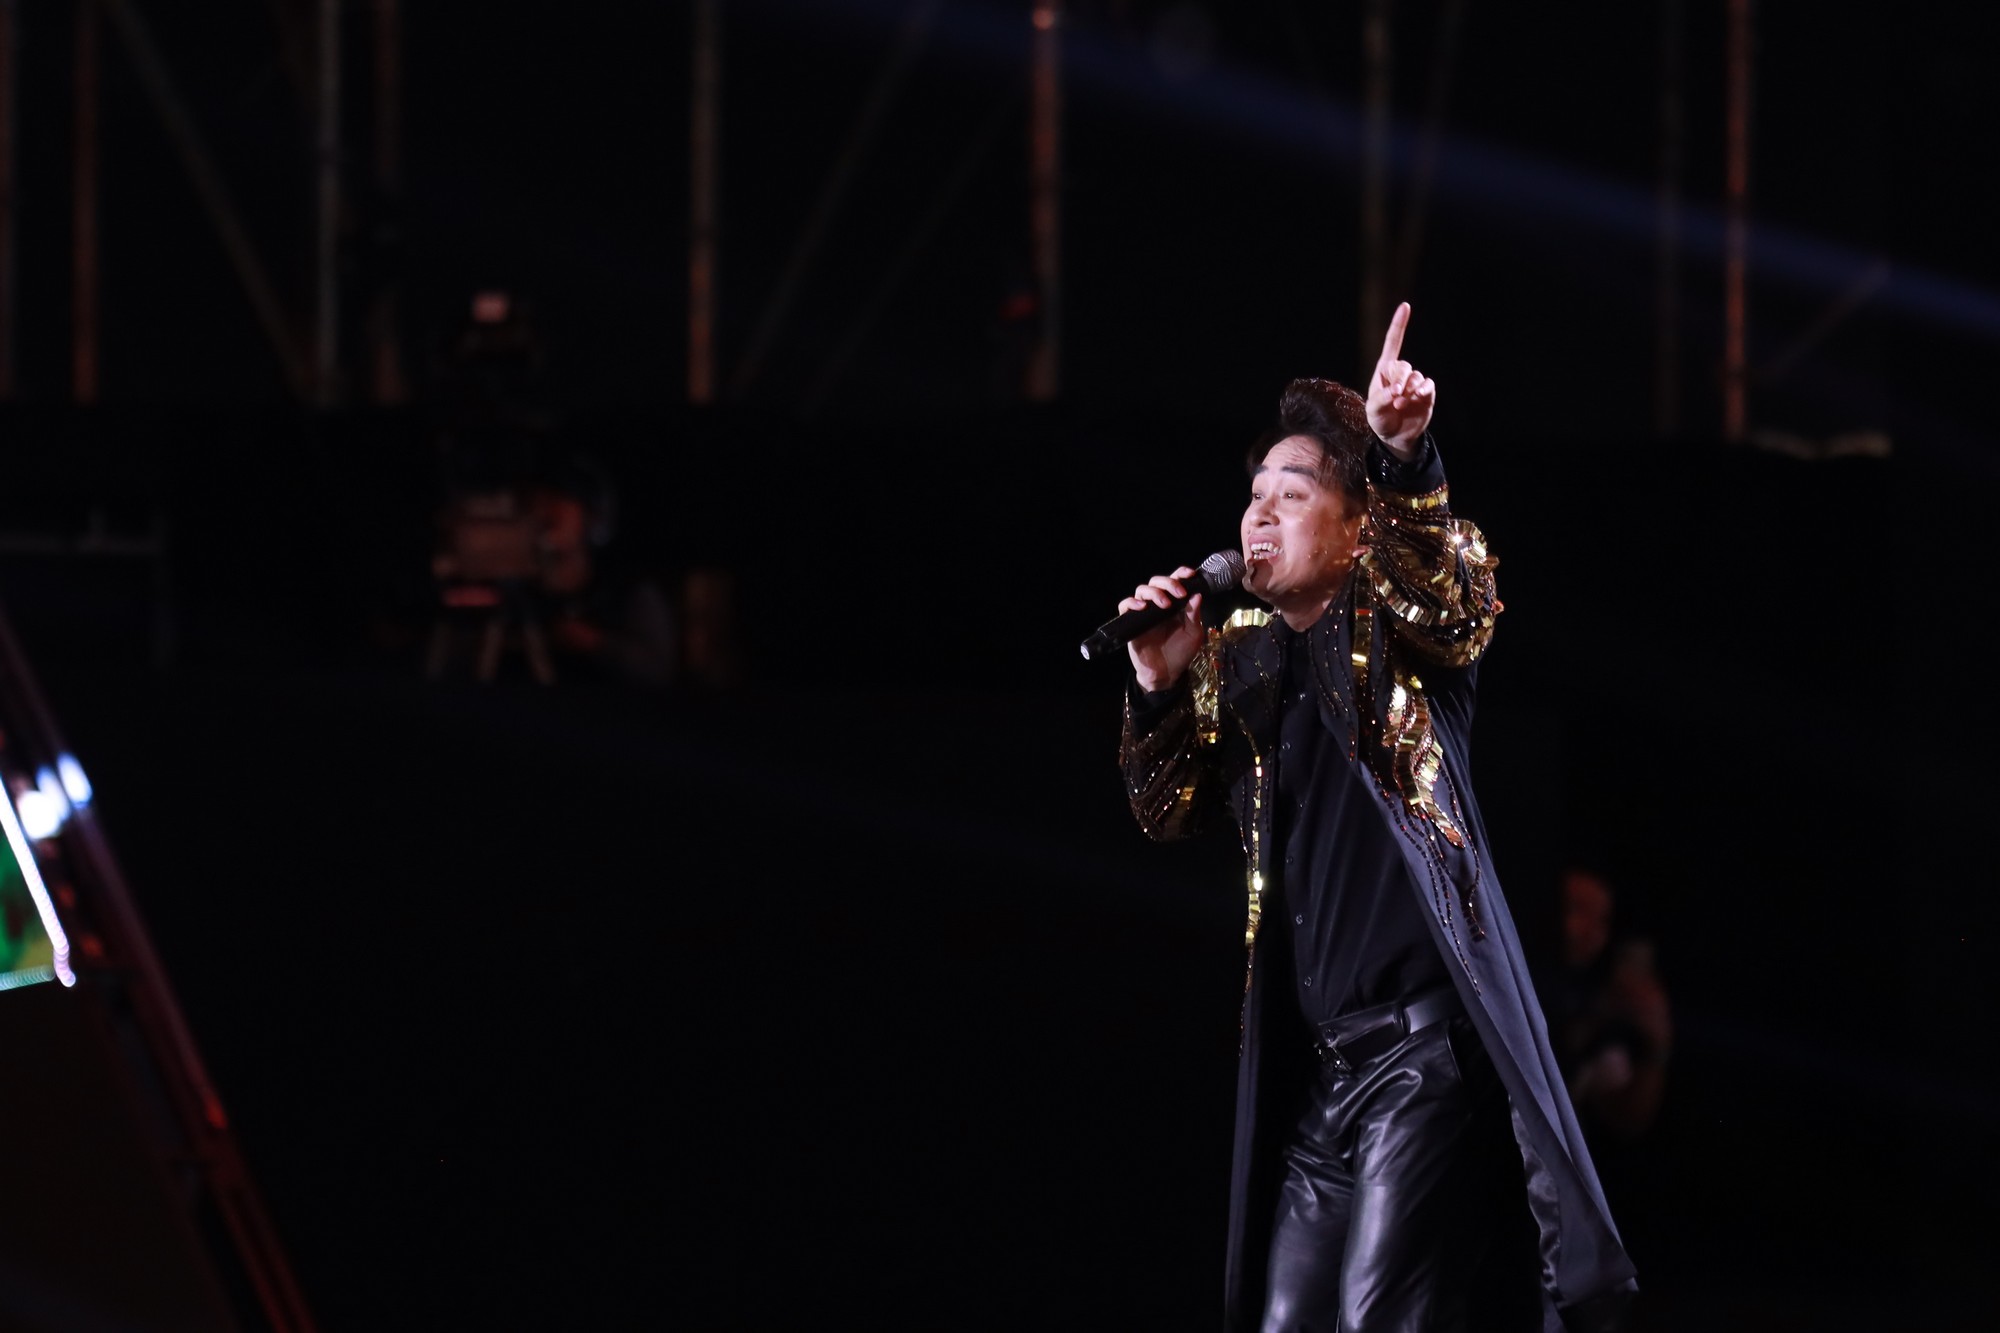 Tùng Dương thực hiện lời hứa với Tăng Duy Tân, mang hit "Bên trên tầng lầu" lên sân khấu đẳng cấp quốc tế